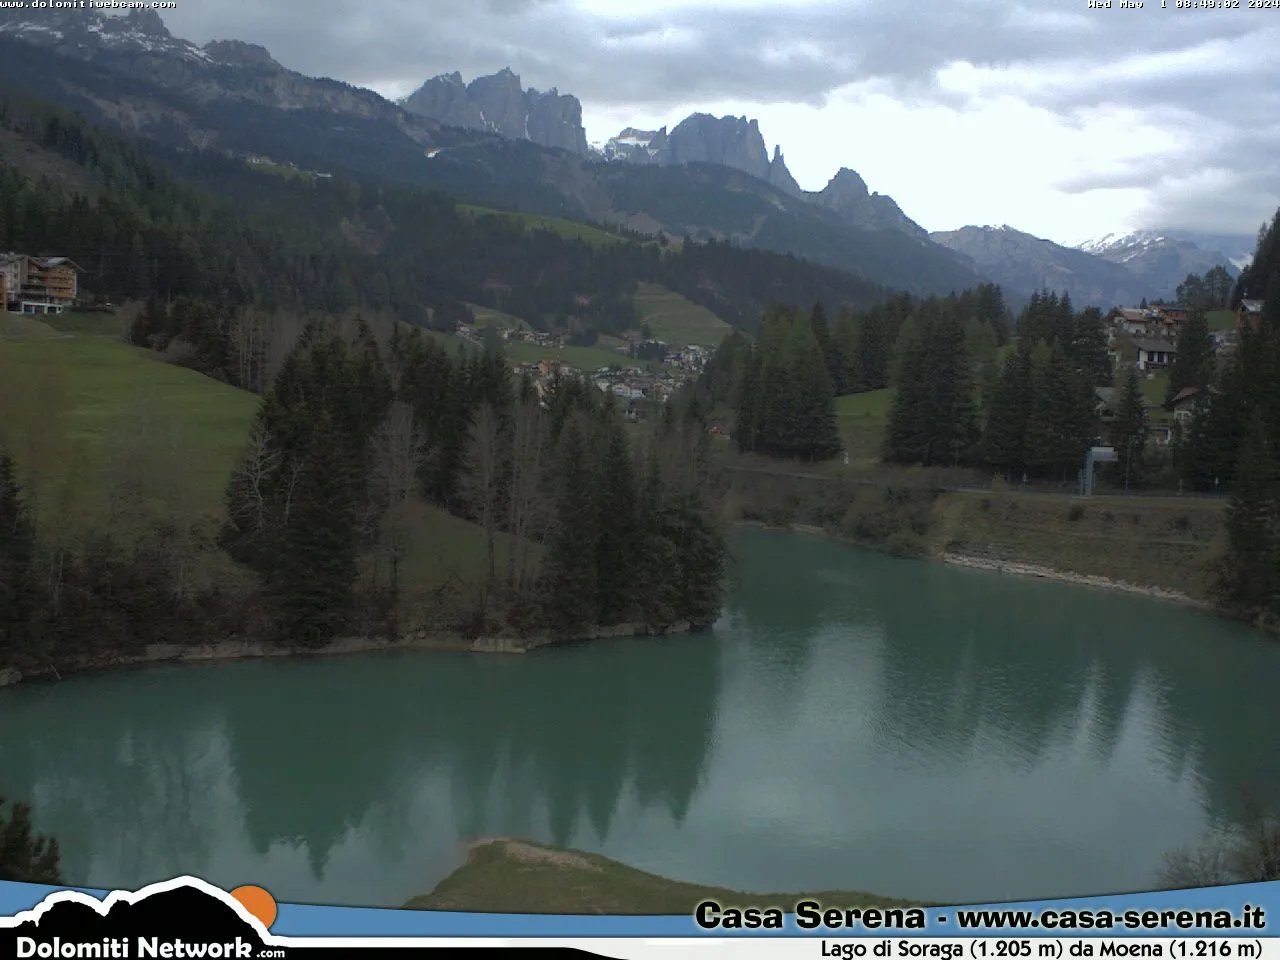 webcam Lago di Soraga,  webcam comune di Moena, webcam provincia di Trento, 
                                            webcam Trentino-Alto Adige, webcam alpi